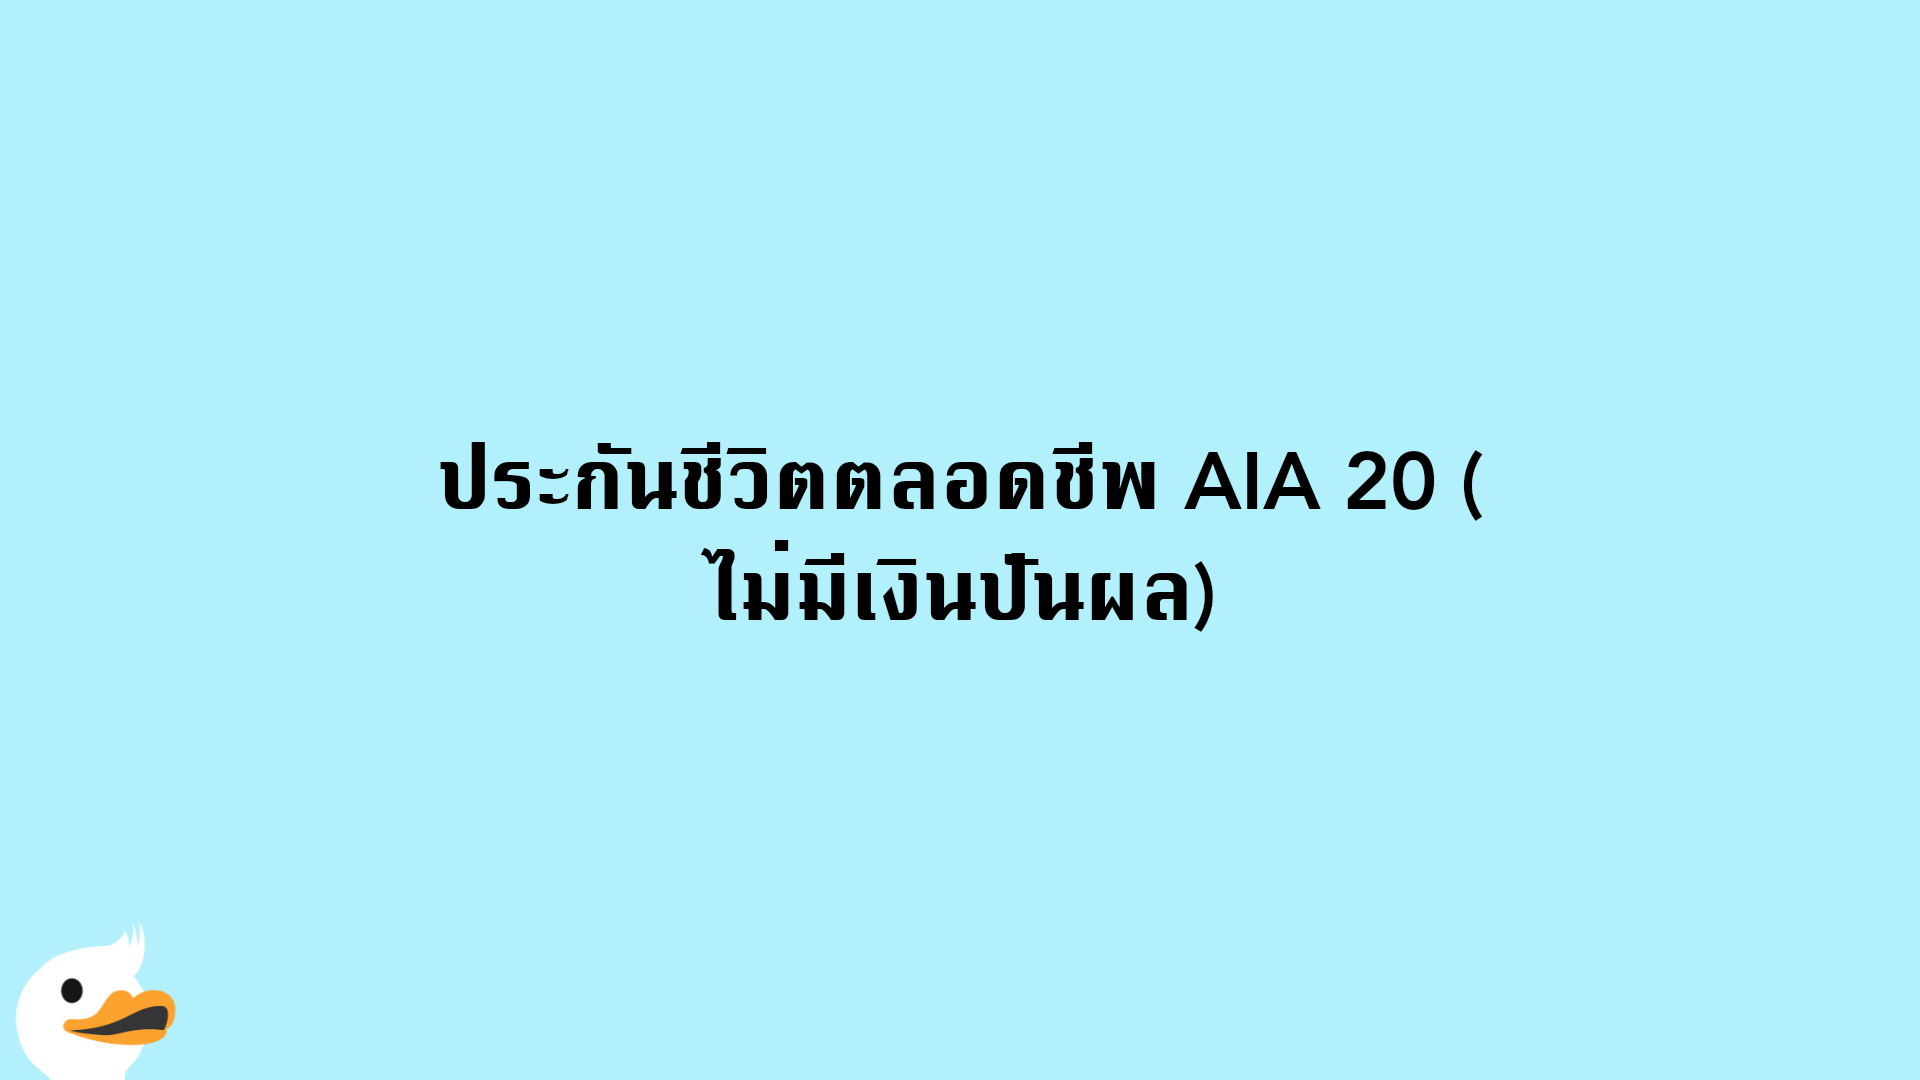 ประกันชีวิตตลอดชีพ AIA 20 (ไม่มีเงินปันผล)